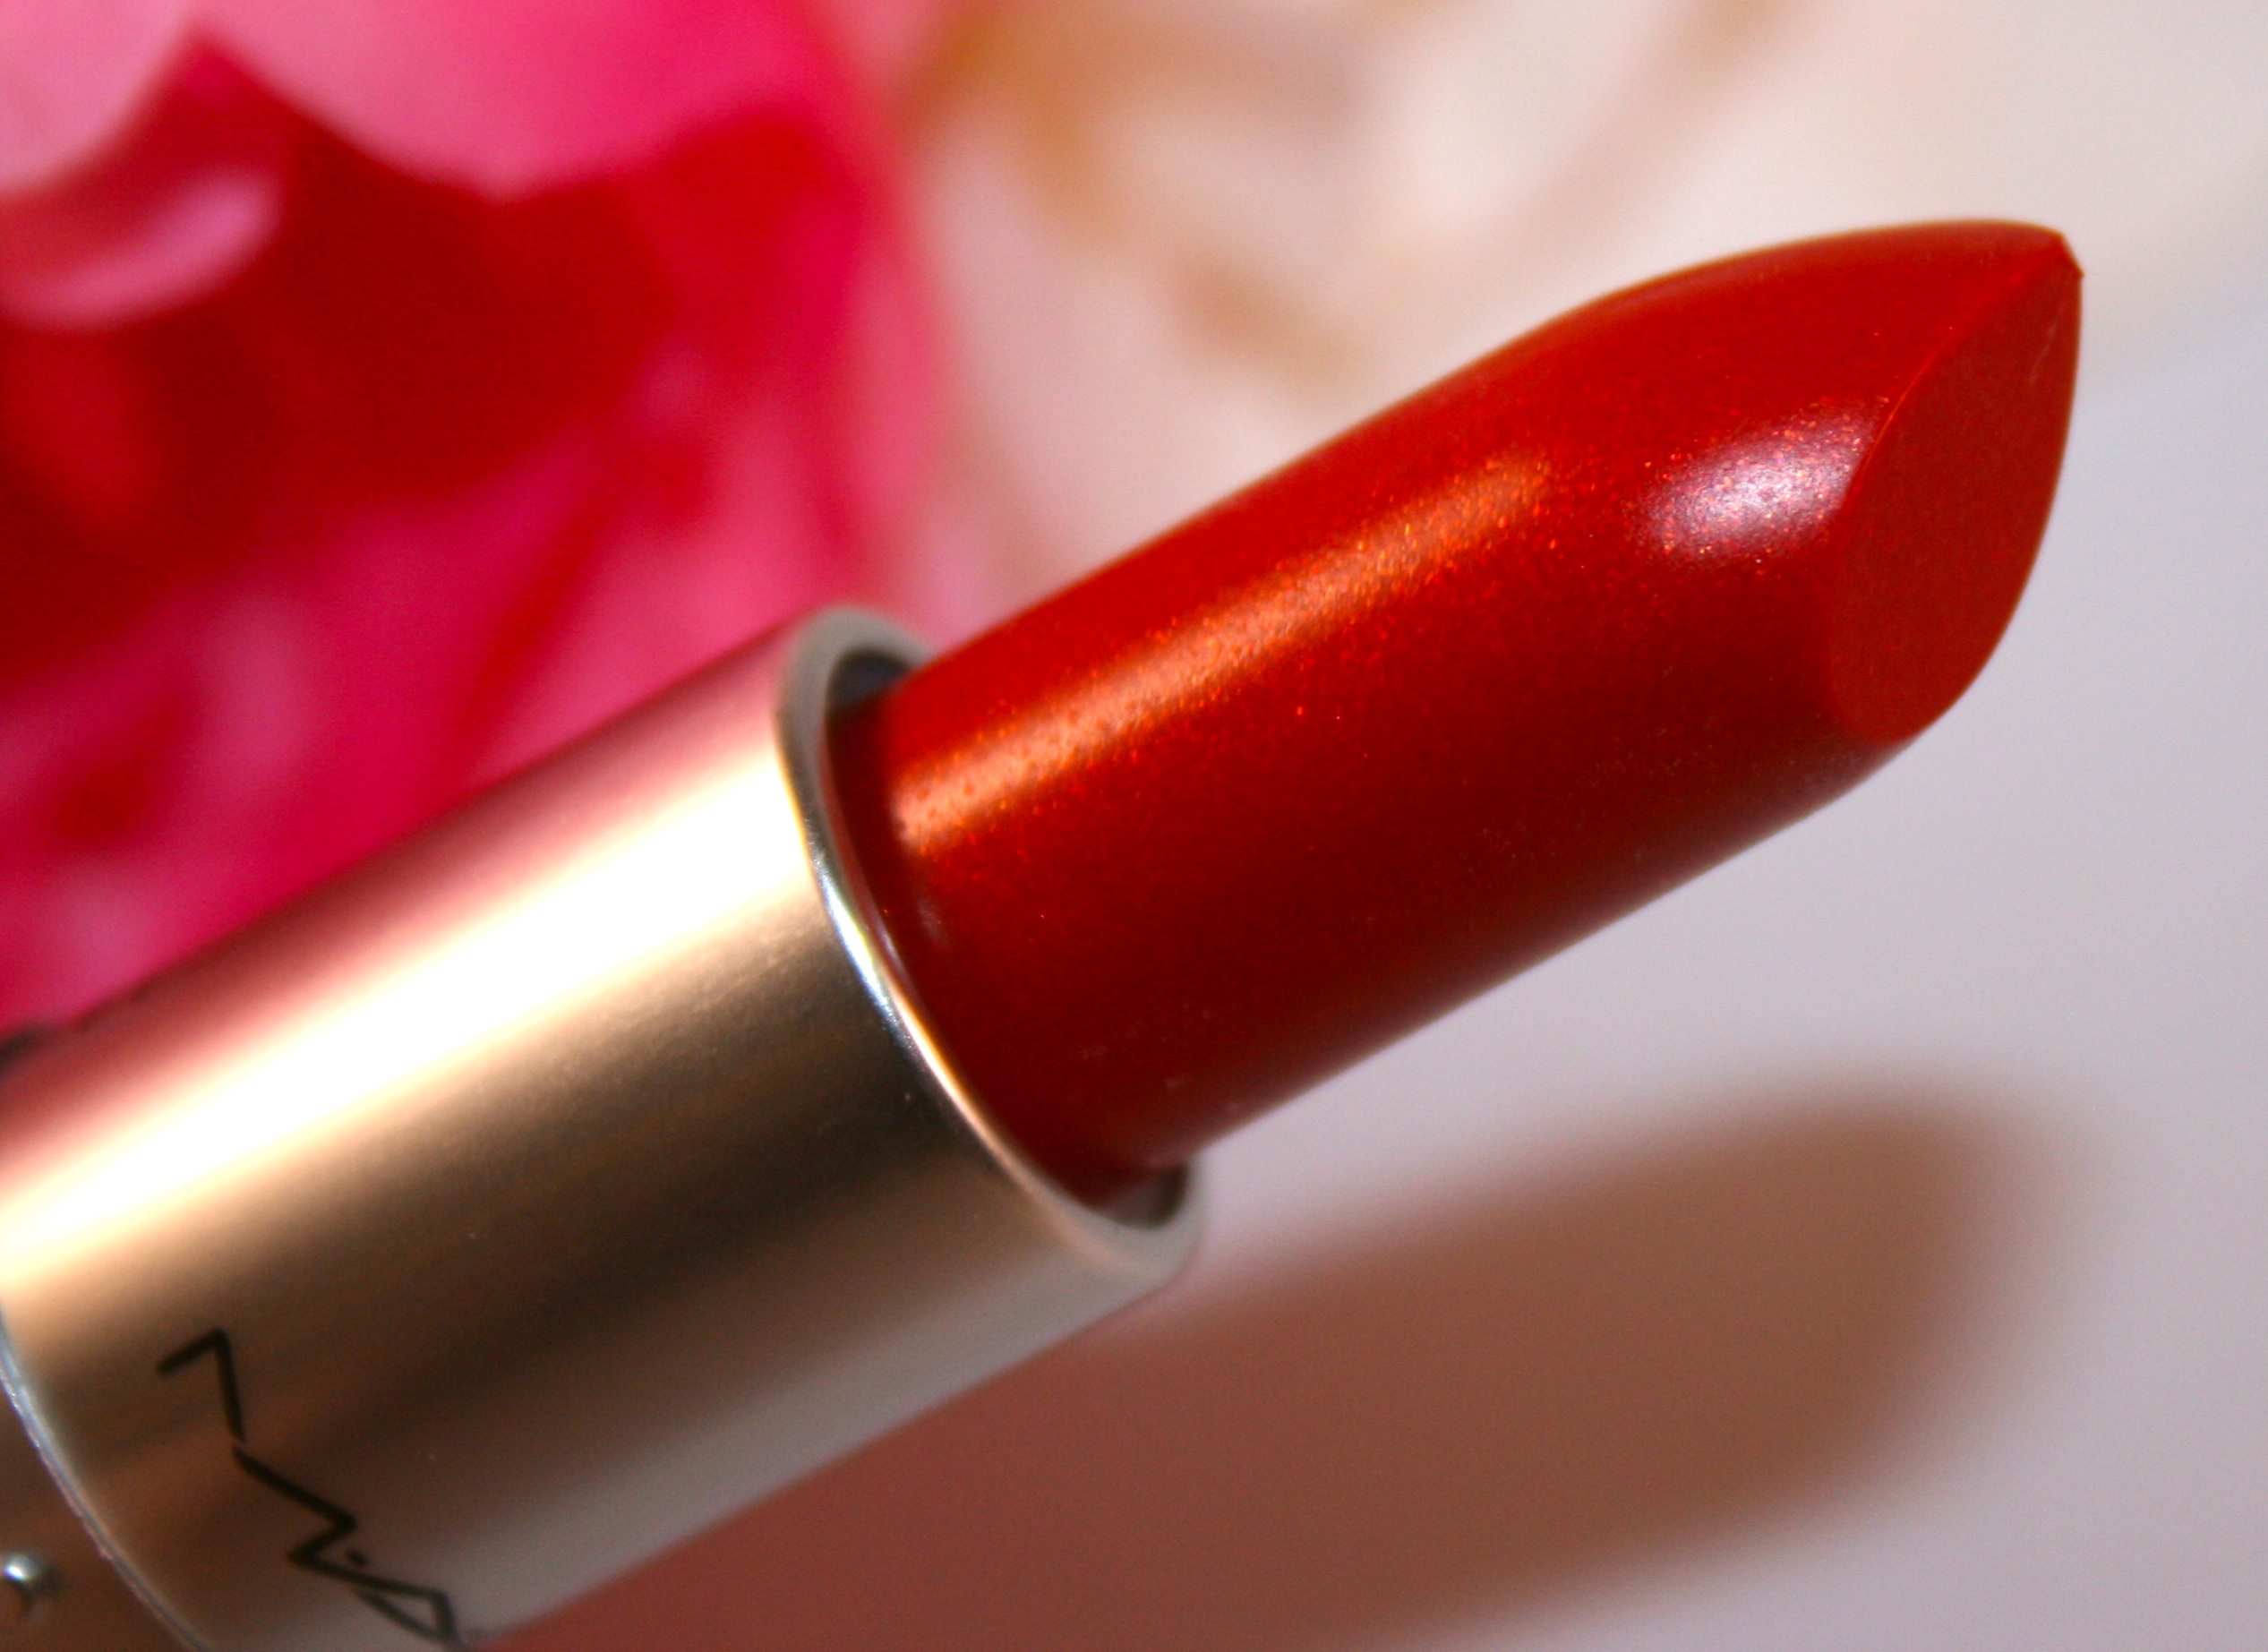 L’Oreal Color Riche (350) “British Red” Lipst...